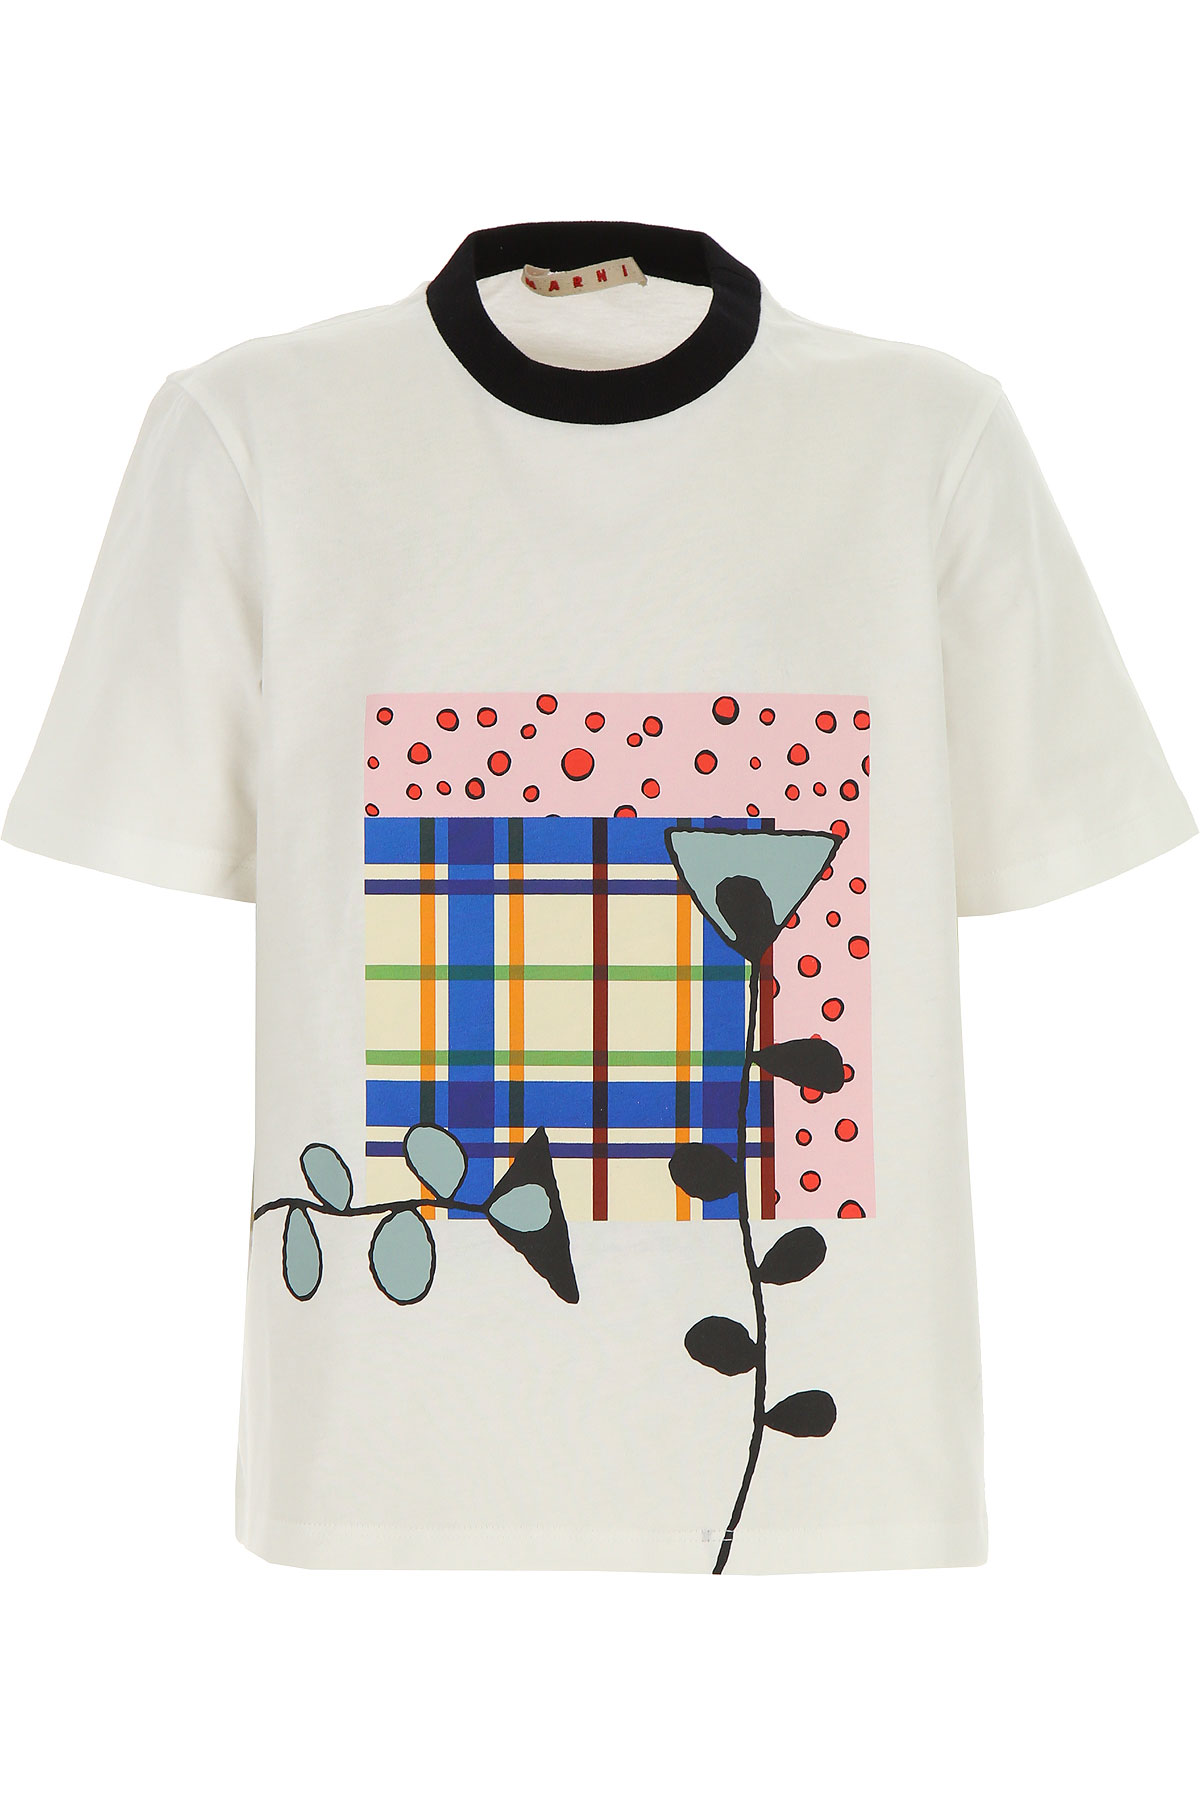 Marni Kinder T-Shirt für Mädchen Günstig im Sale, Weiss, Baumwolle, 2017, 10Y 8Y